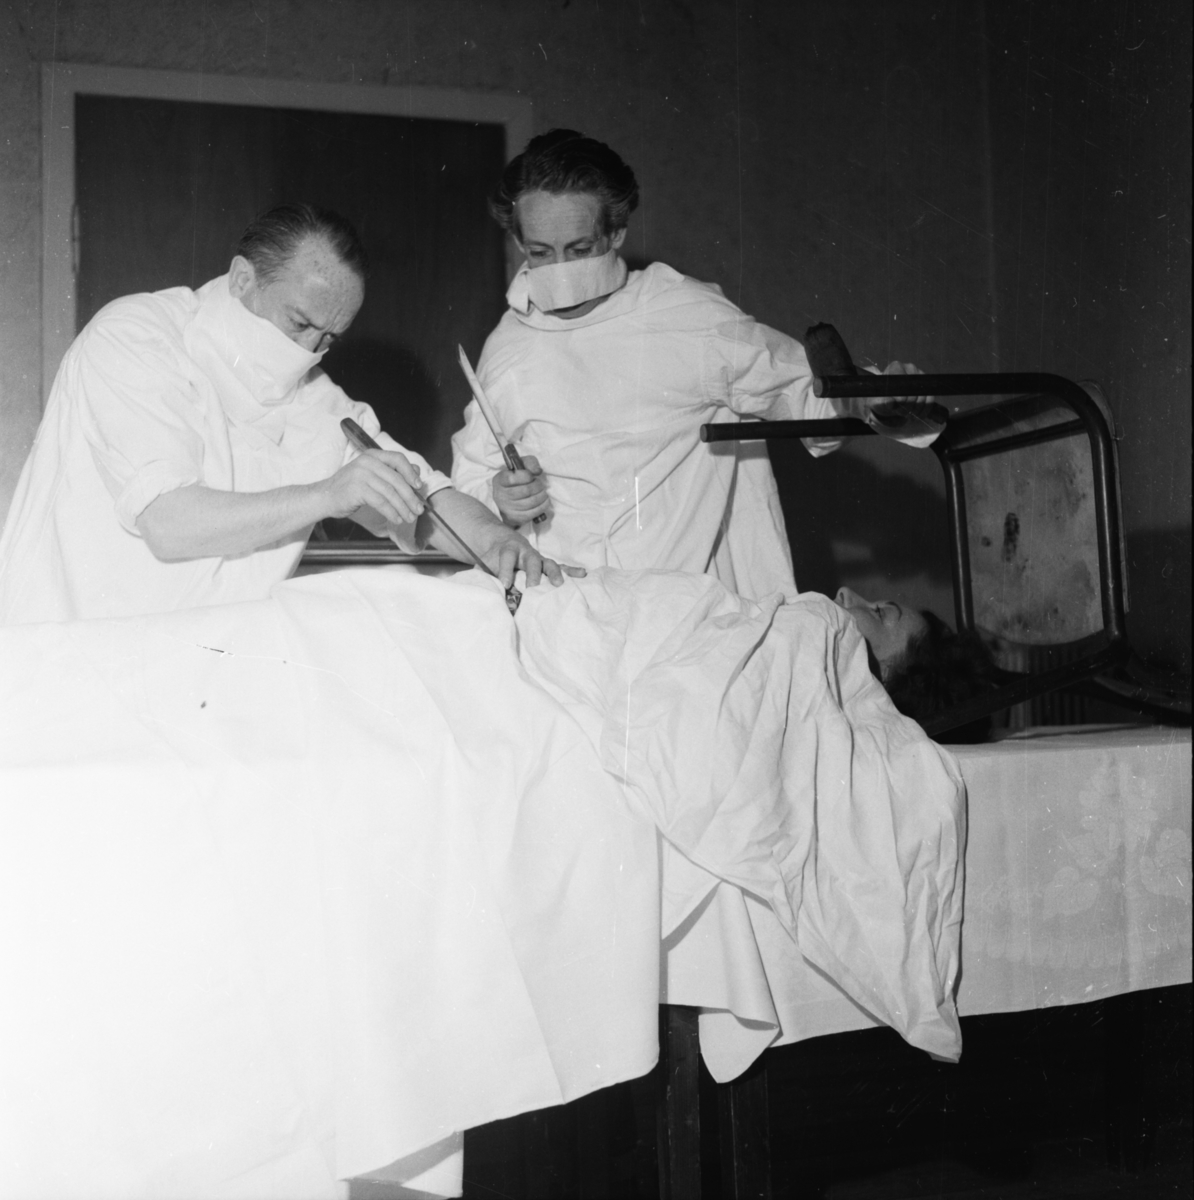 Vardens arkiv. "Operasjon" v/Arvid Nilsen og Dan Foss m/Herberth revyen"  21.05.1954